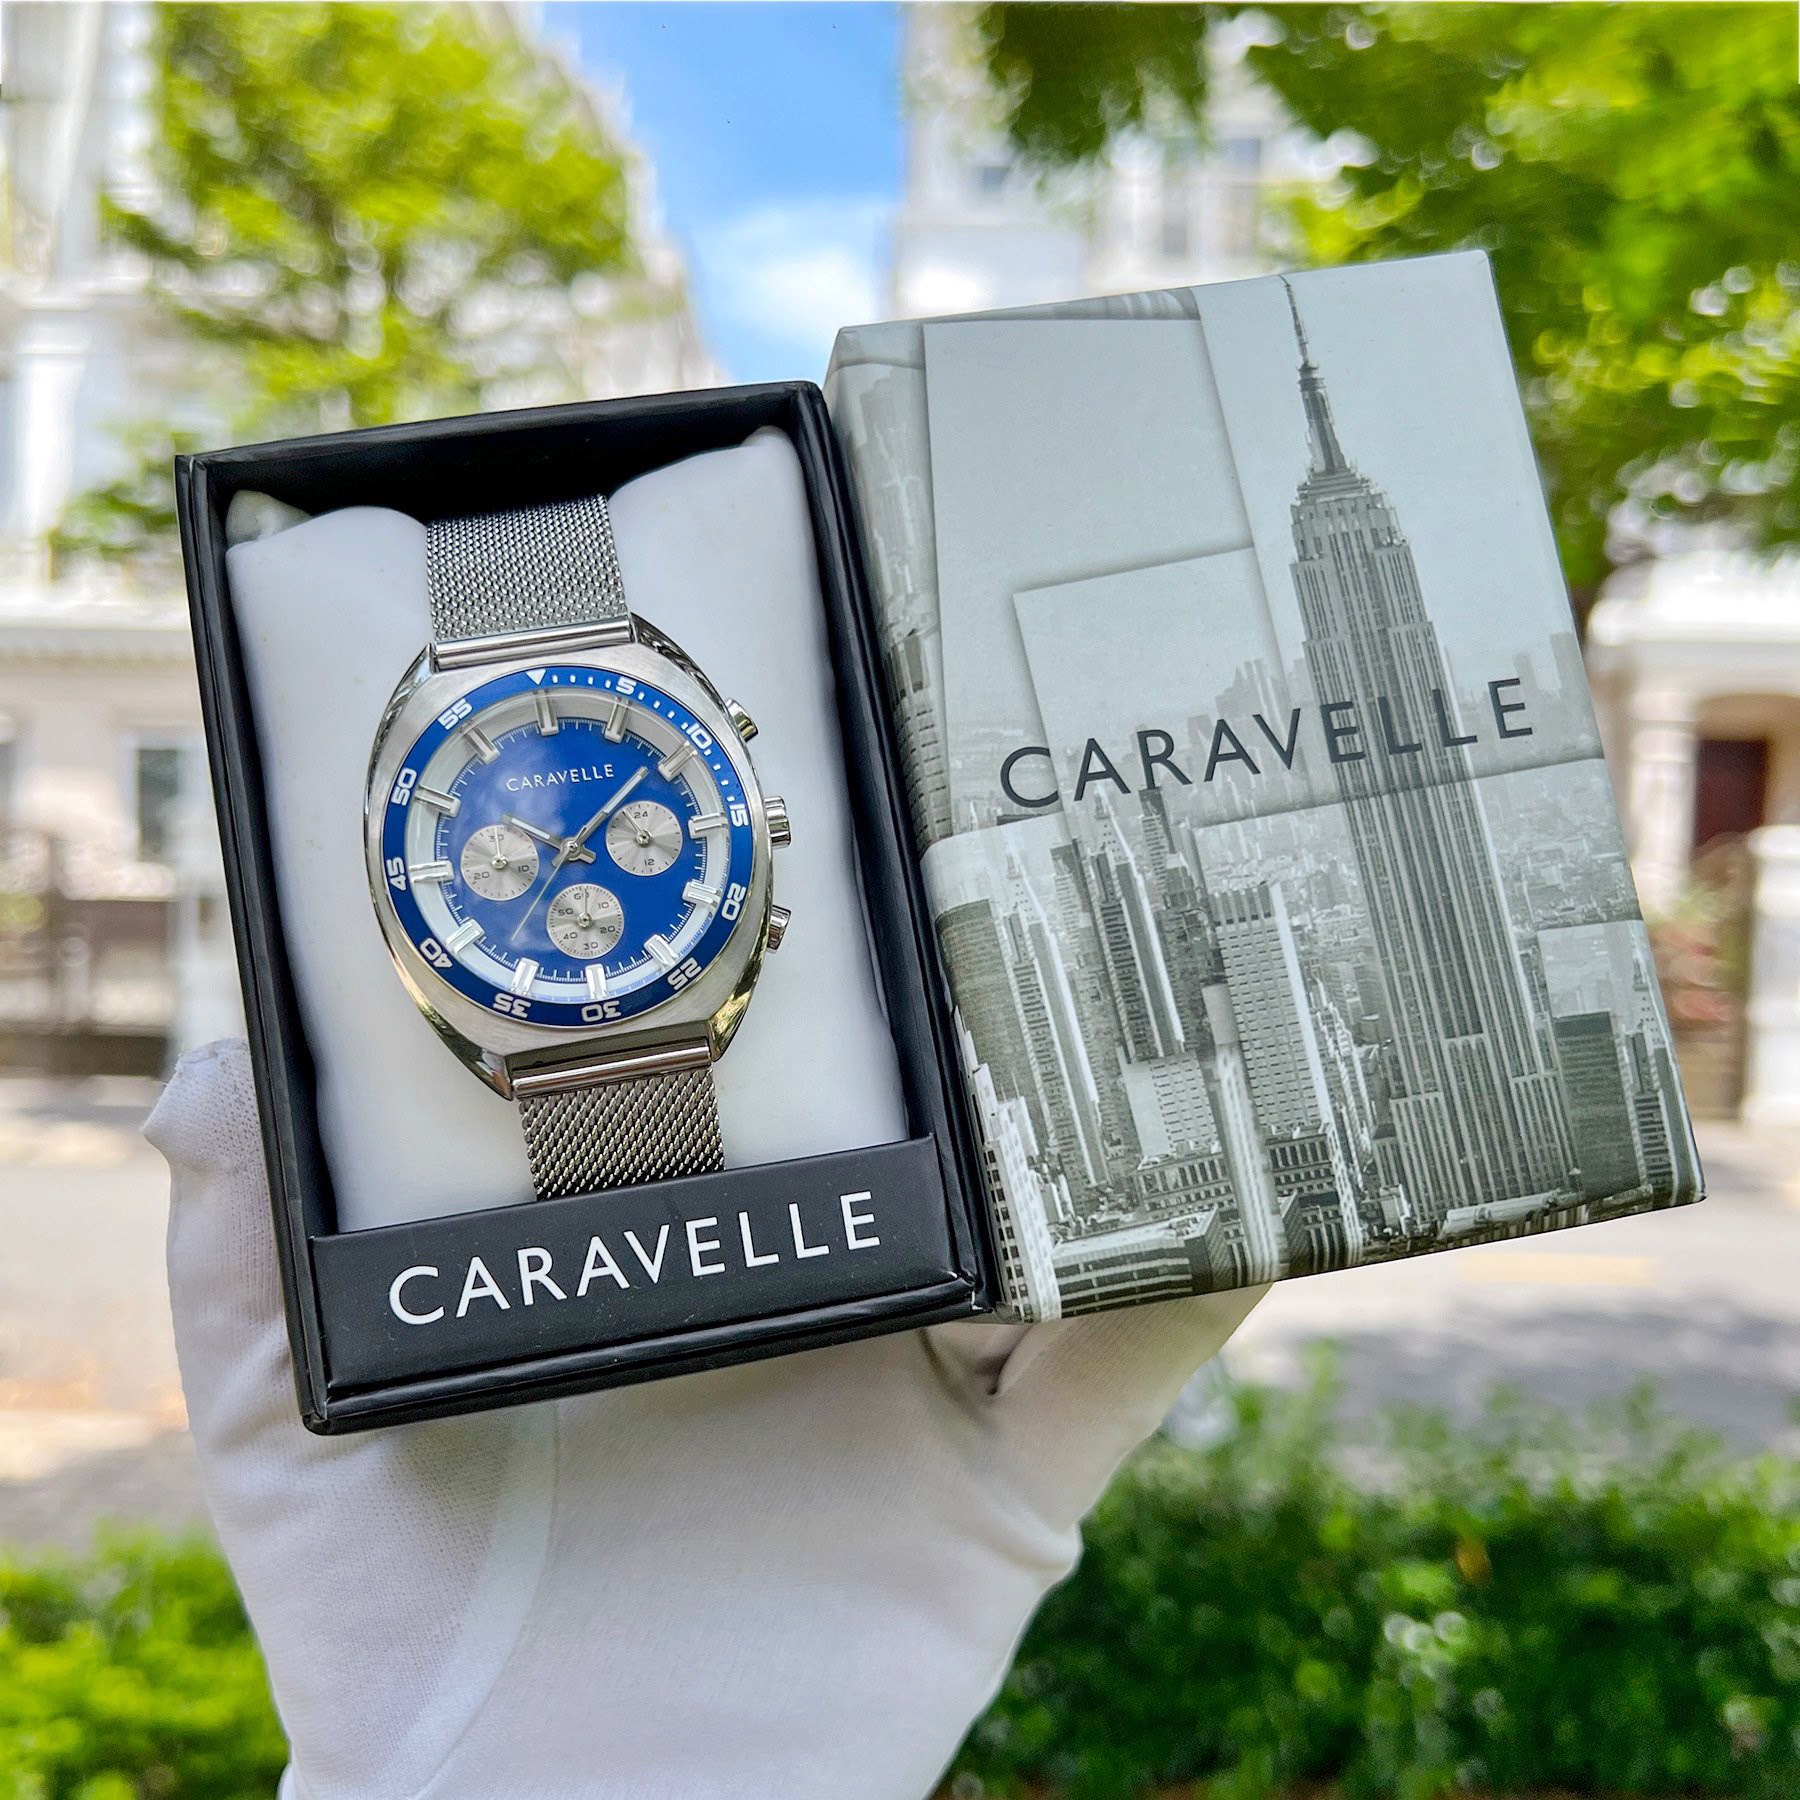 Caravelle sử dụng những chất liệu cao cấp trong sản xuất đồng hồ